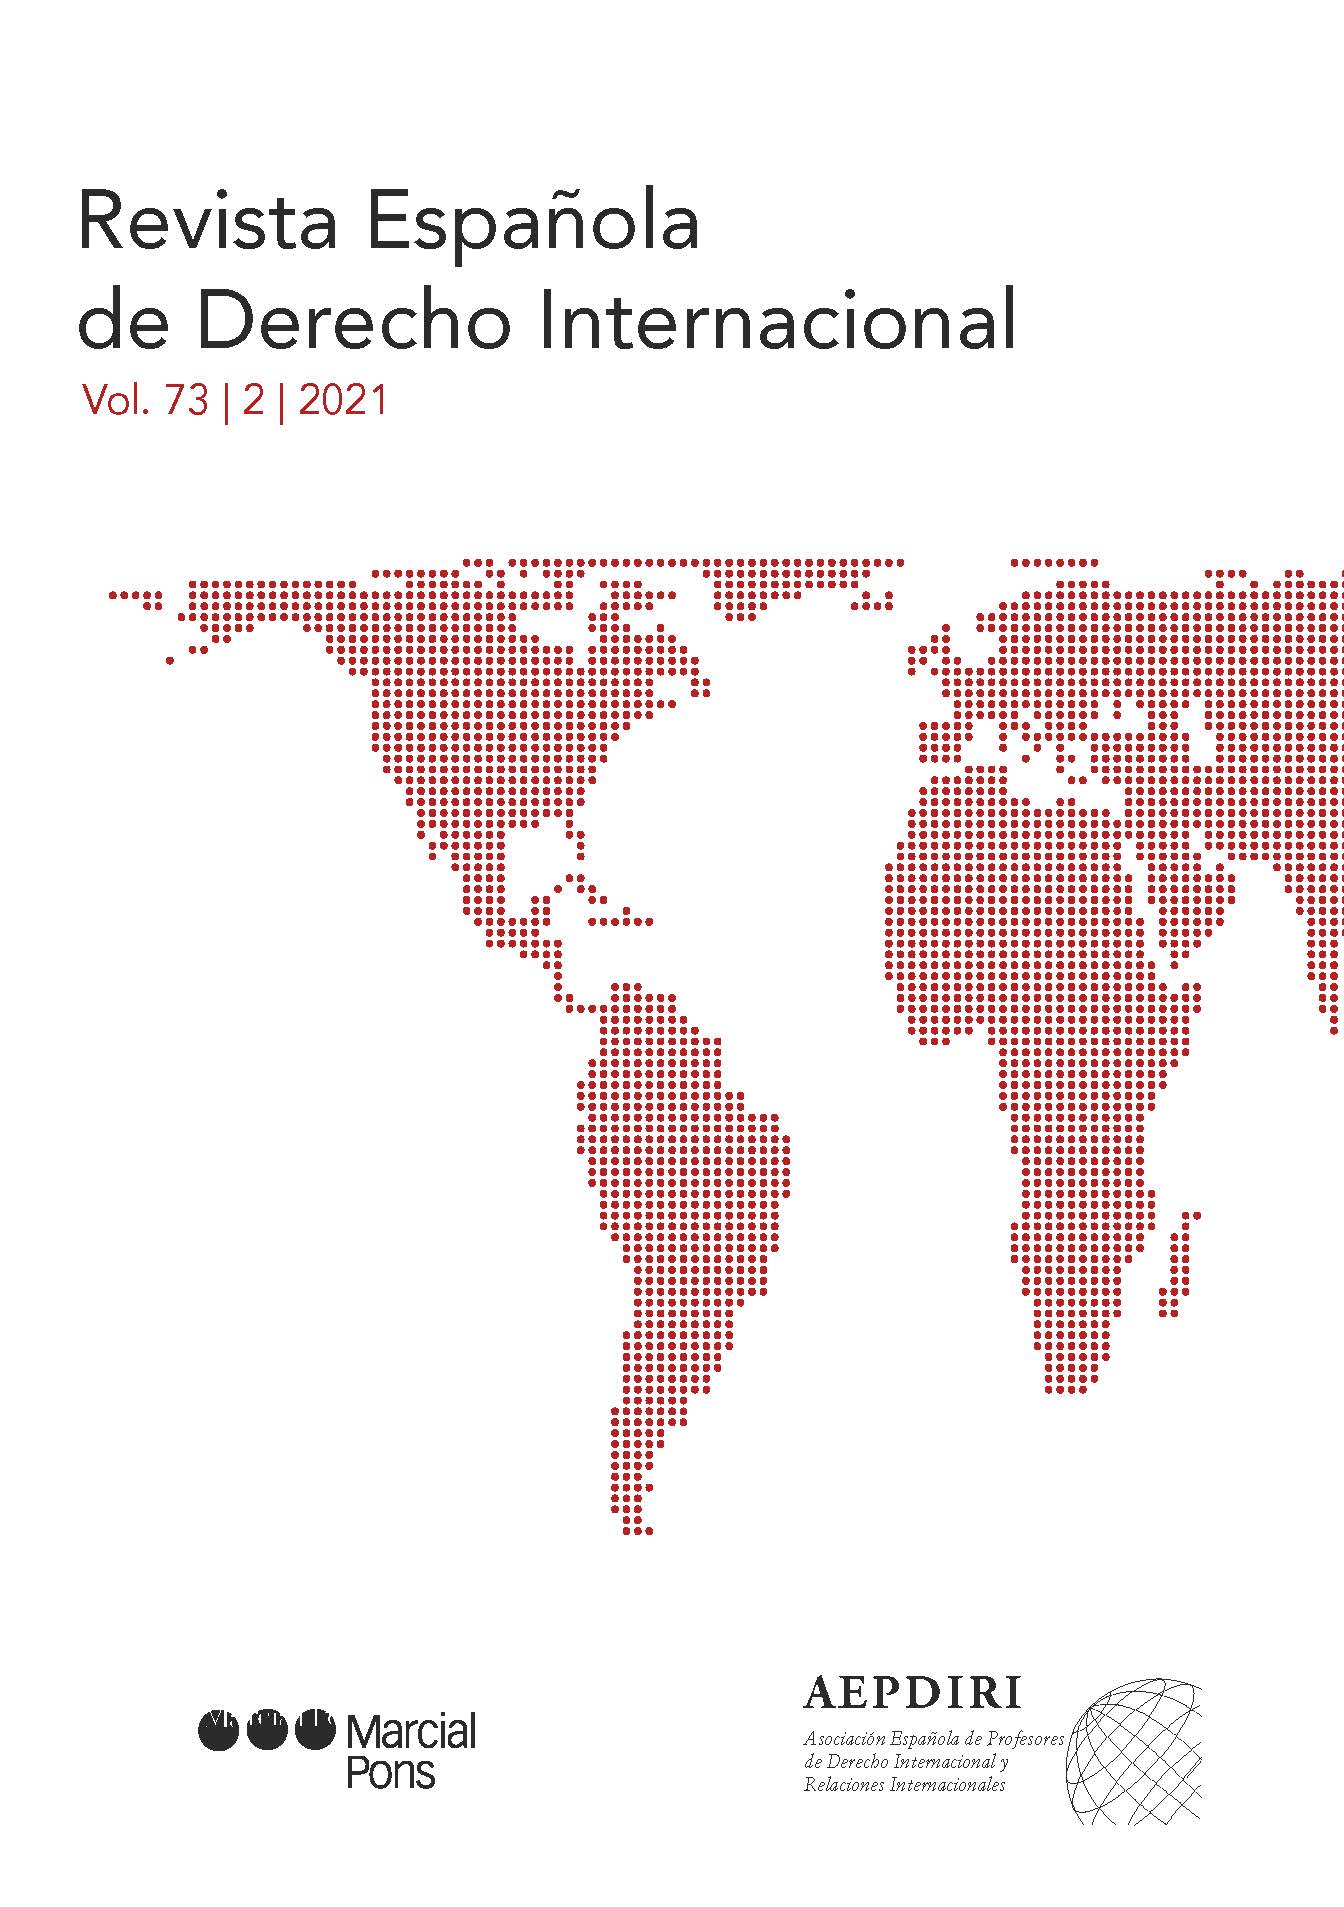 Revista Española de Derecho Internacional, Volumen 73, Nº 2, Año 2021